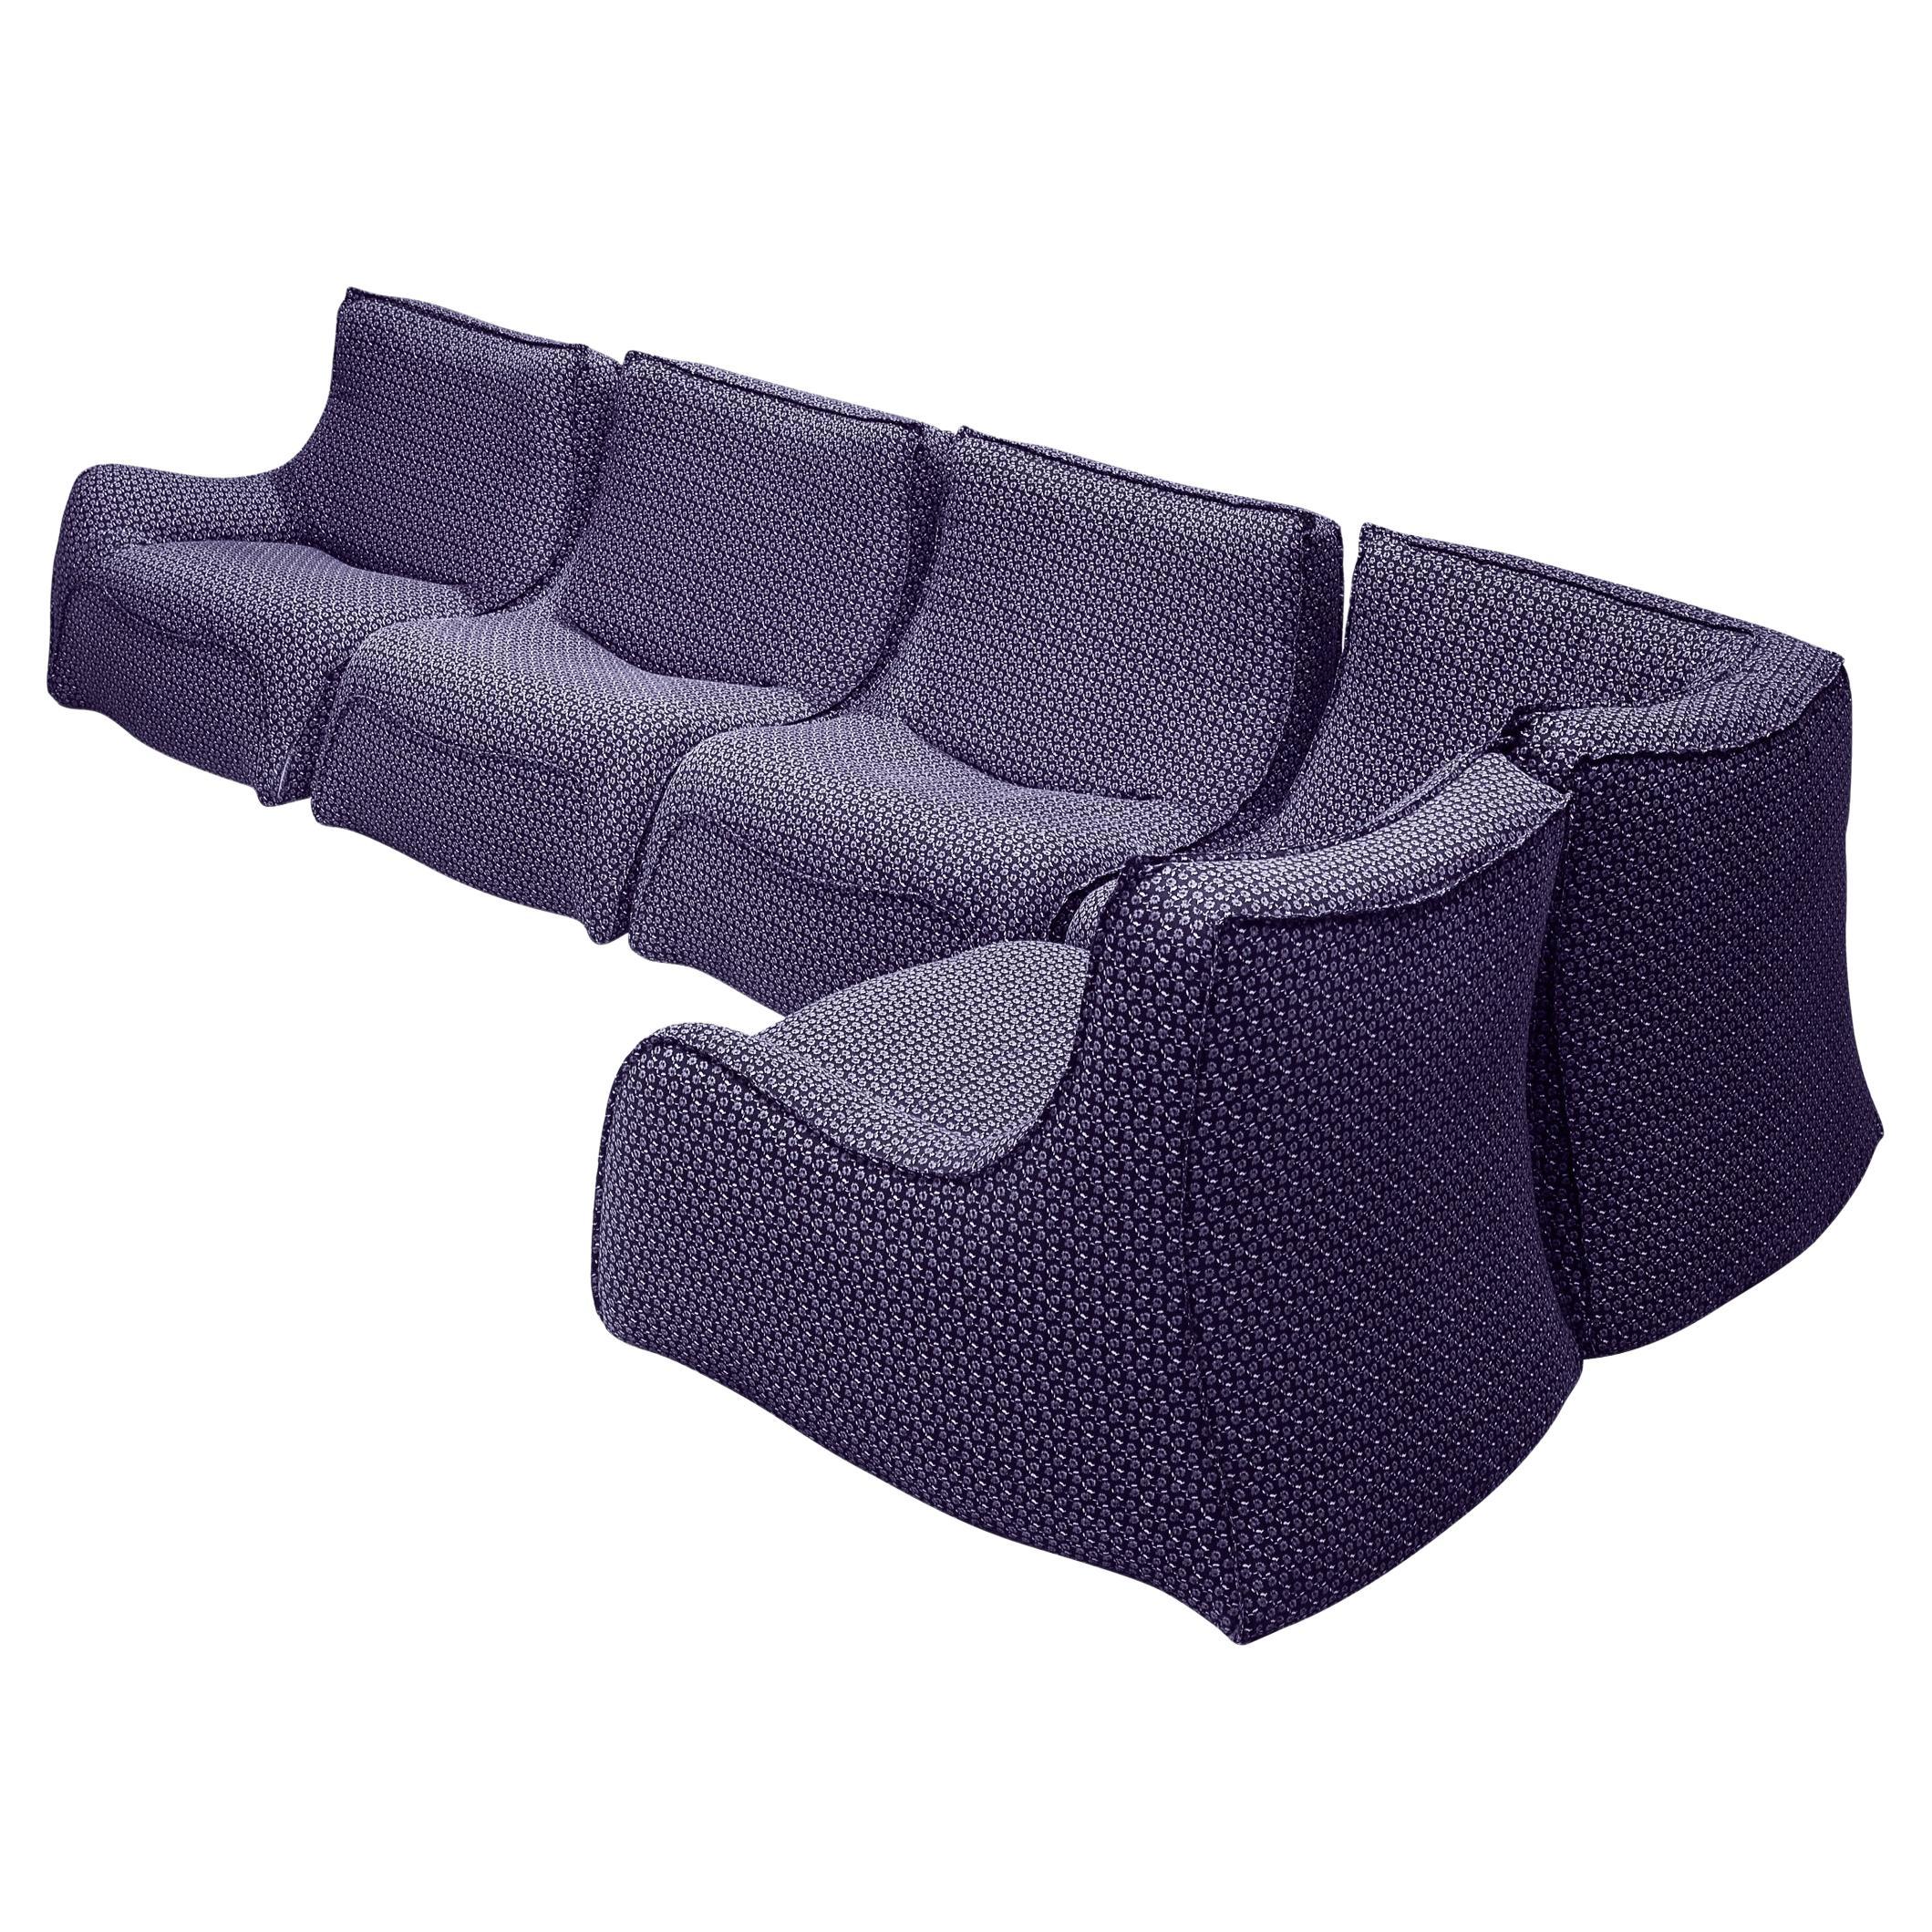 Rare Bernard Govin for Ligne Roset Sectional Sofa in Purple Upholstery For Sale